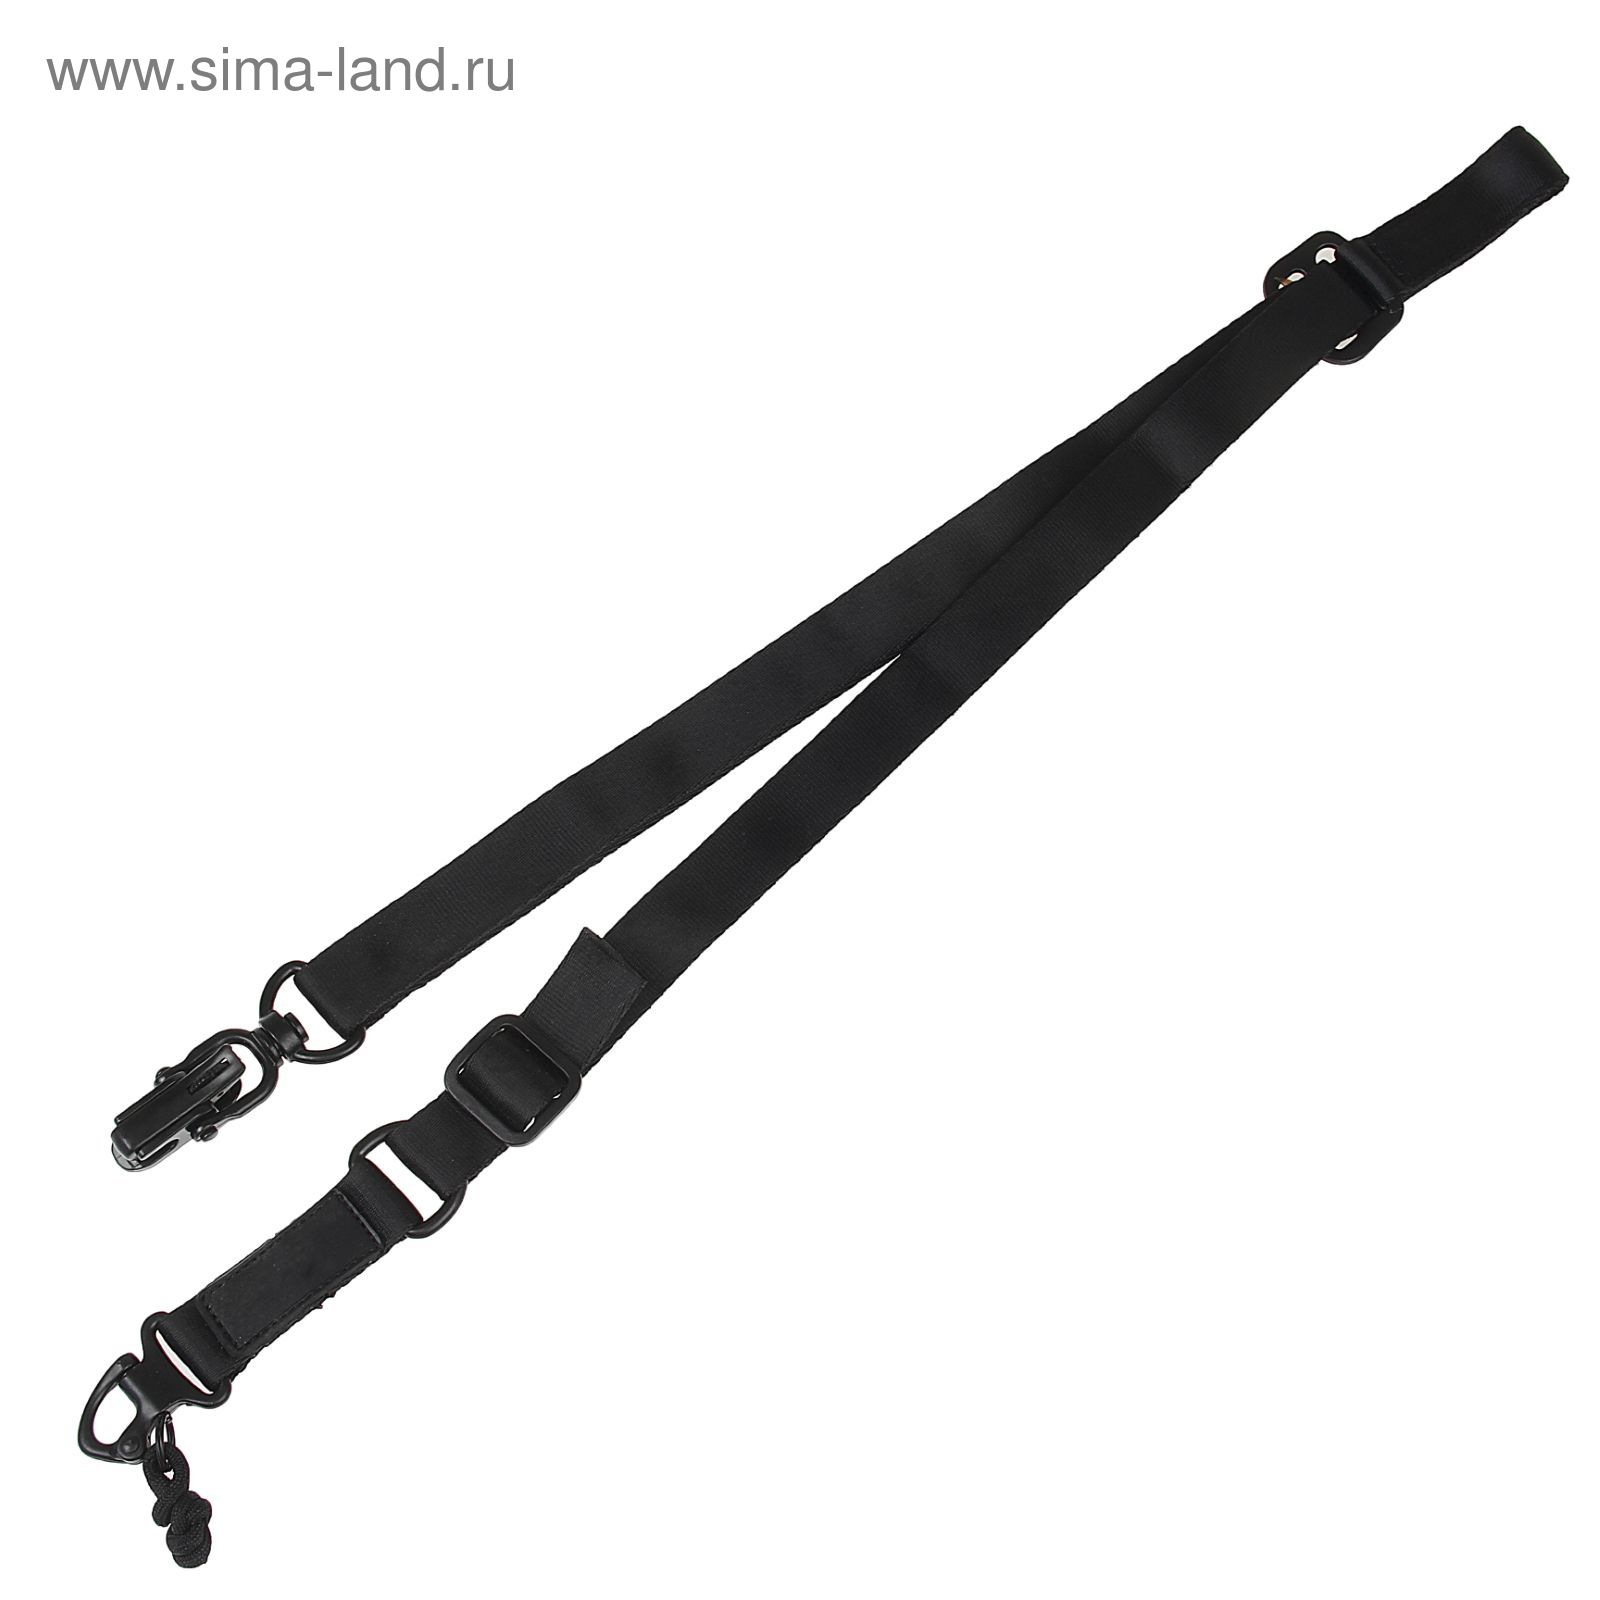 Ремень оружейный MS2 sling(without logo) SL-23-BK